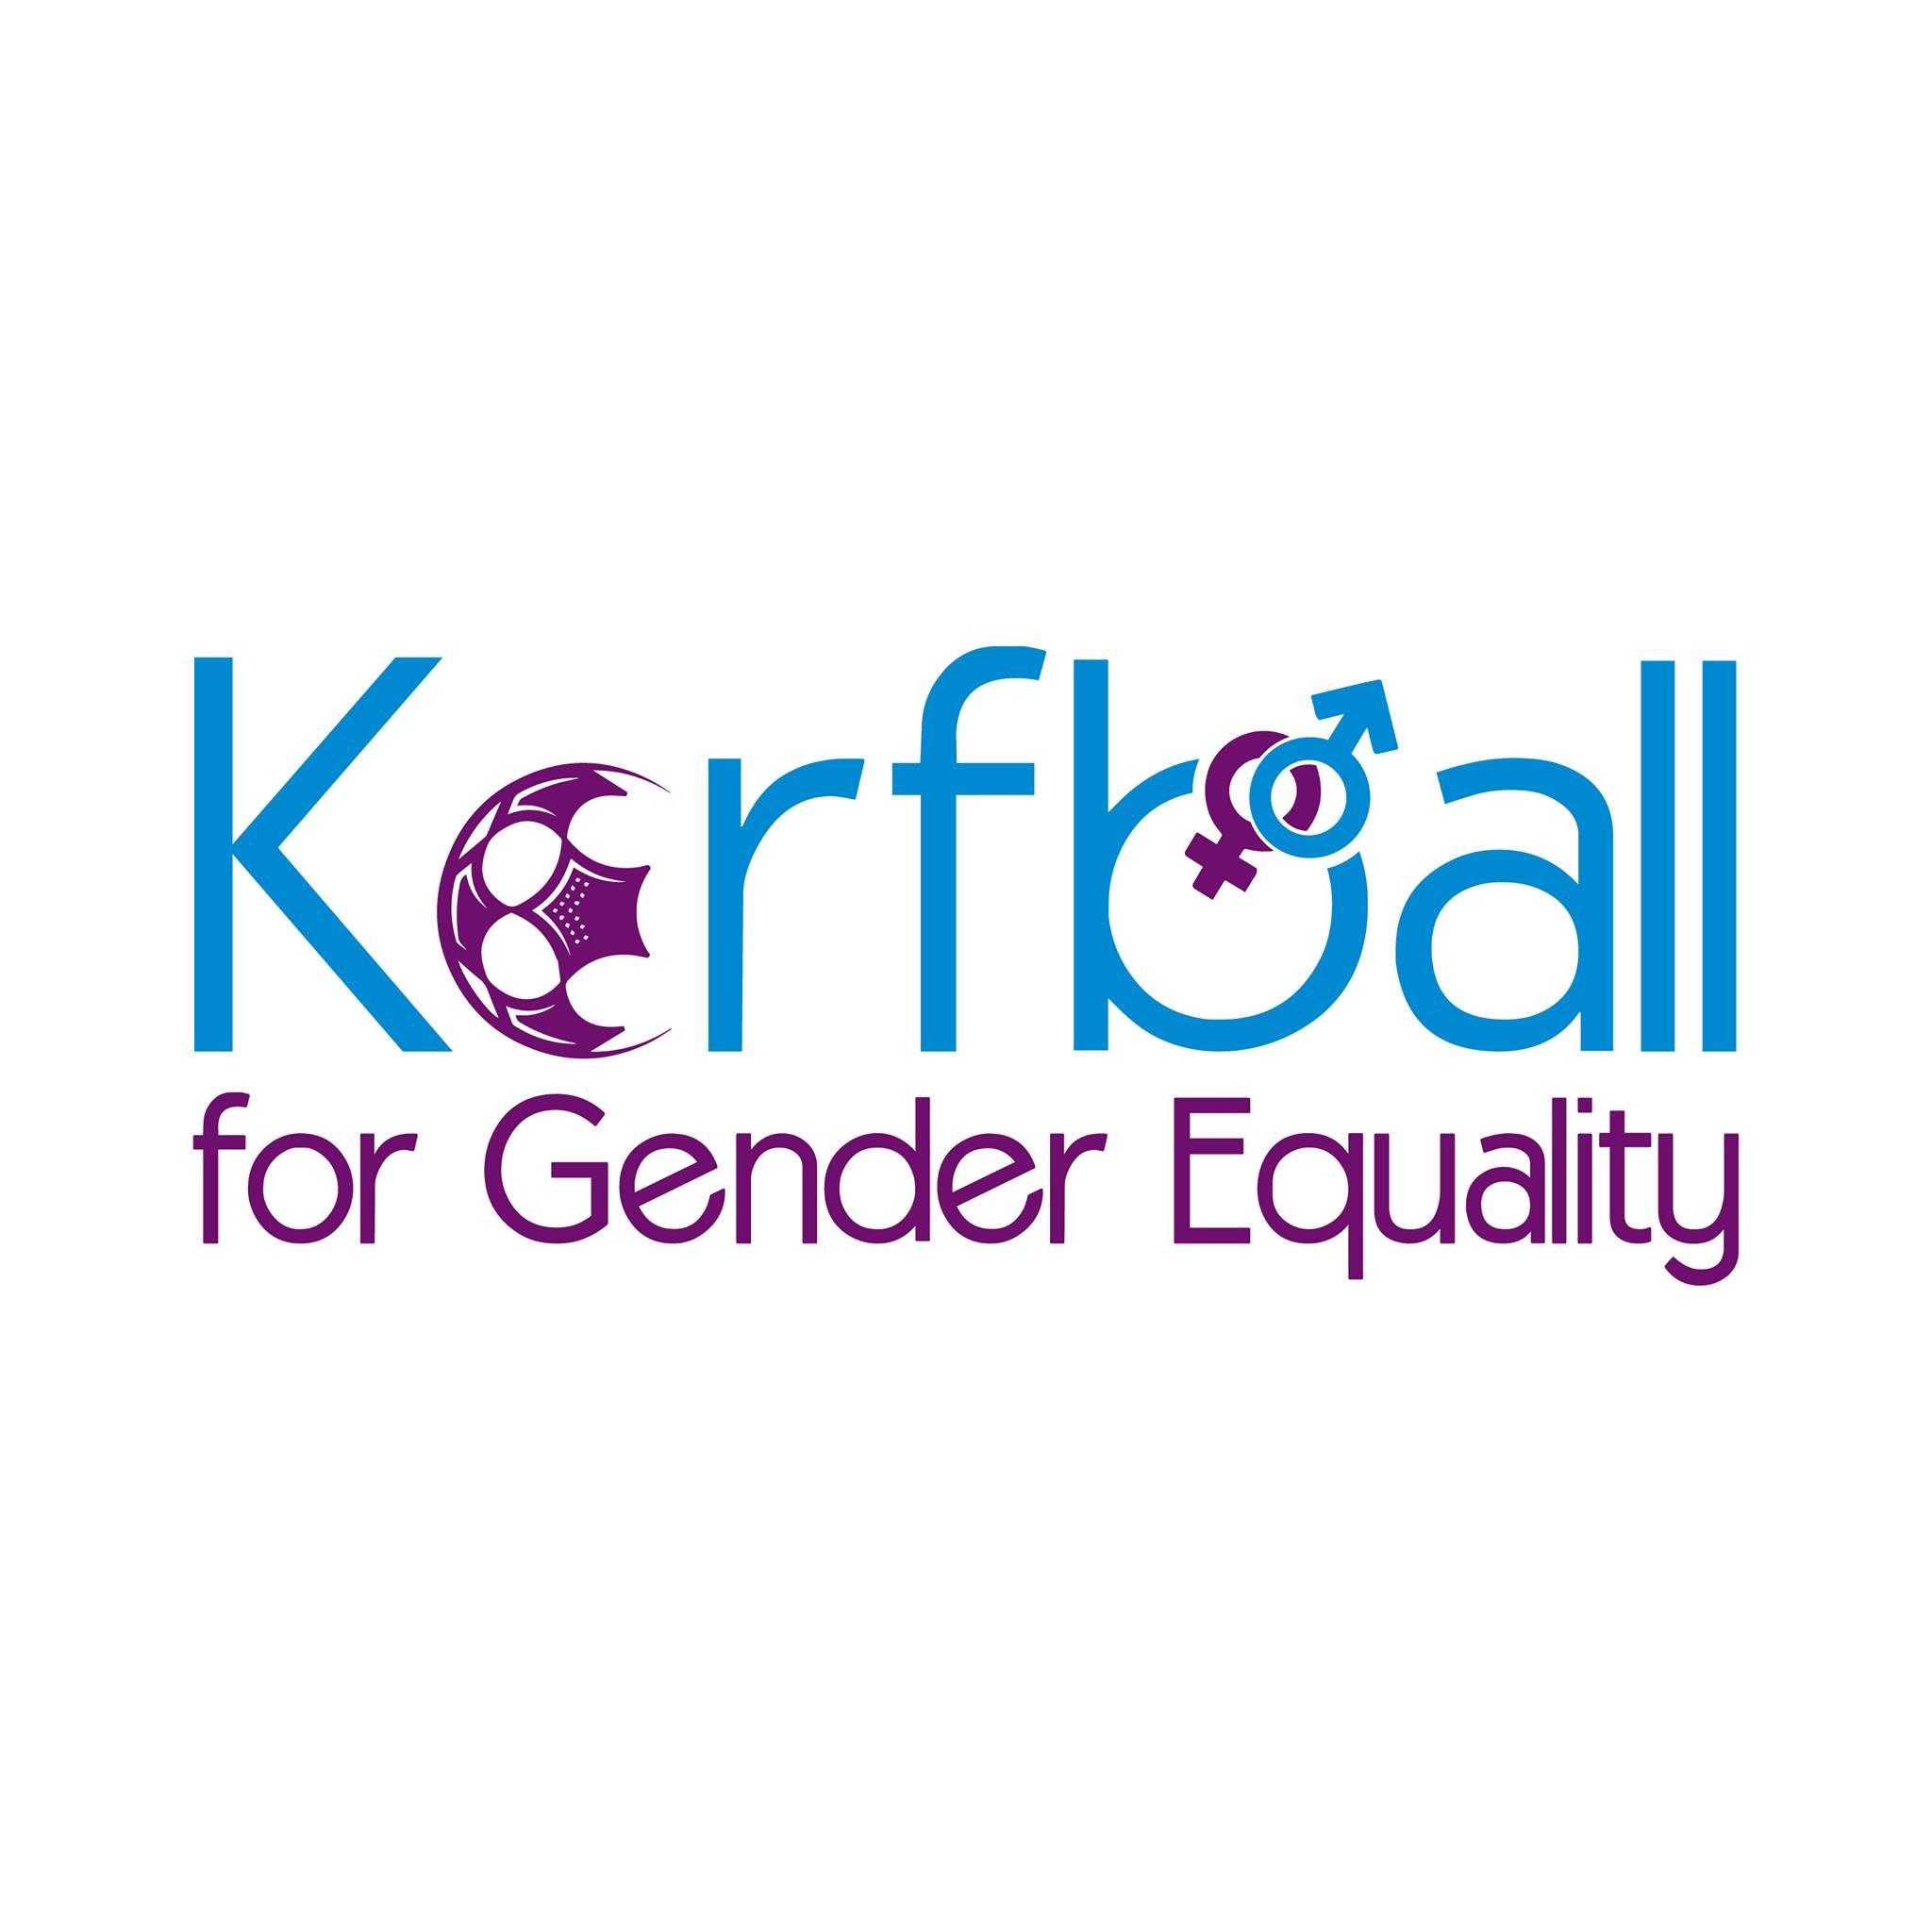 100% Sport - Korfball for Gender Equality Logo